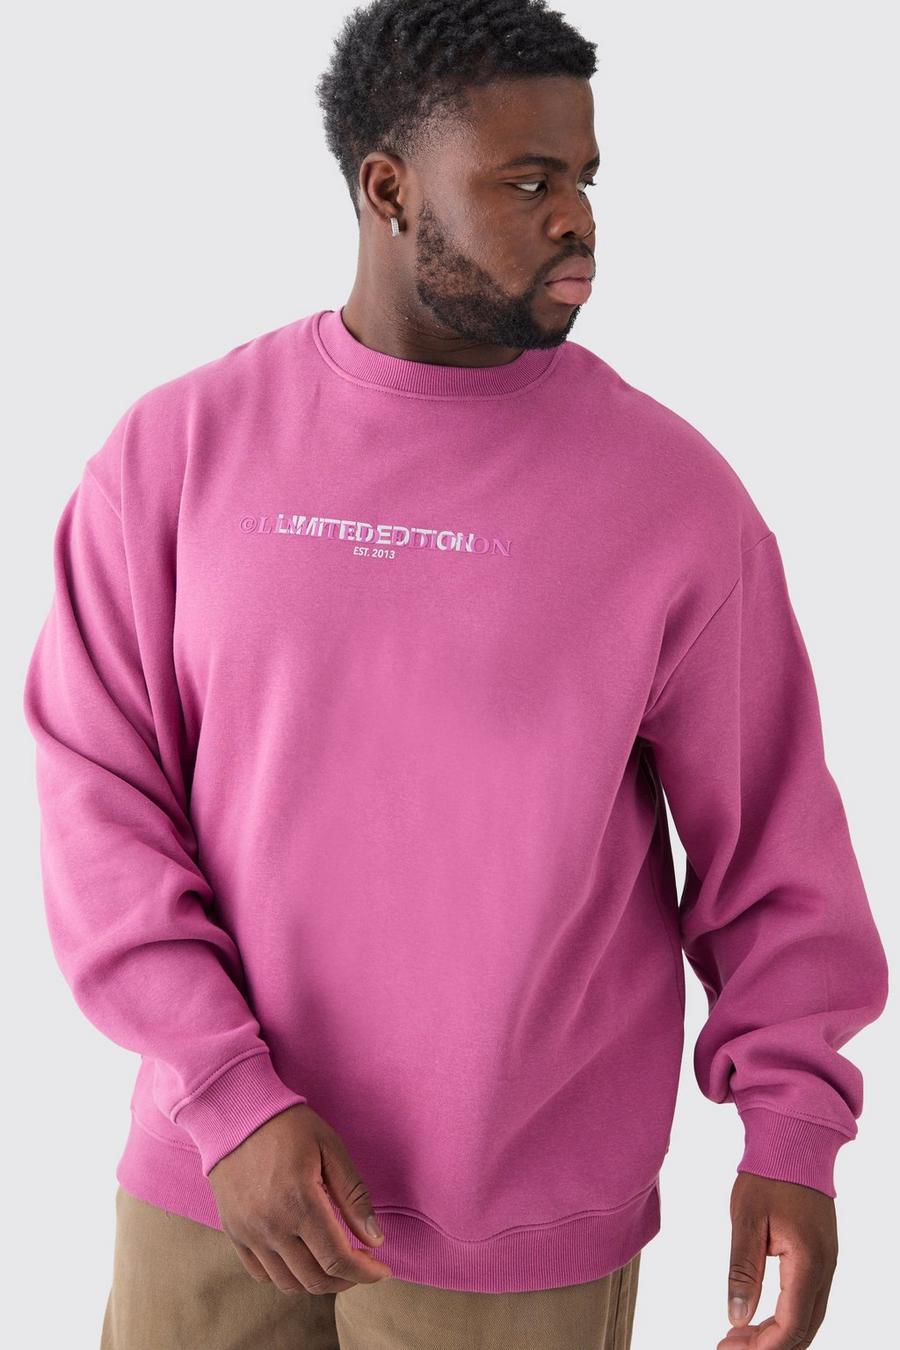 Plus Oversize Limited Sweatshirt, Rose